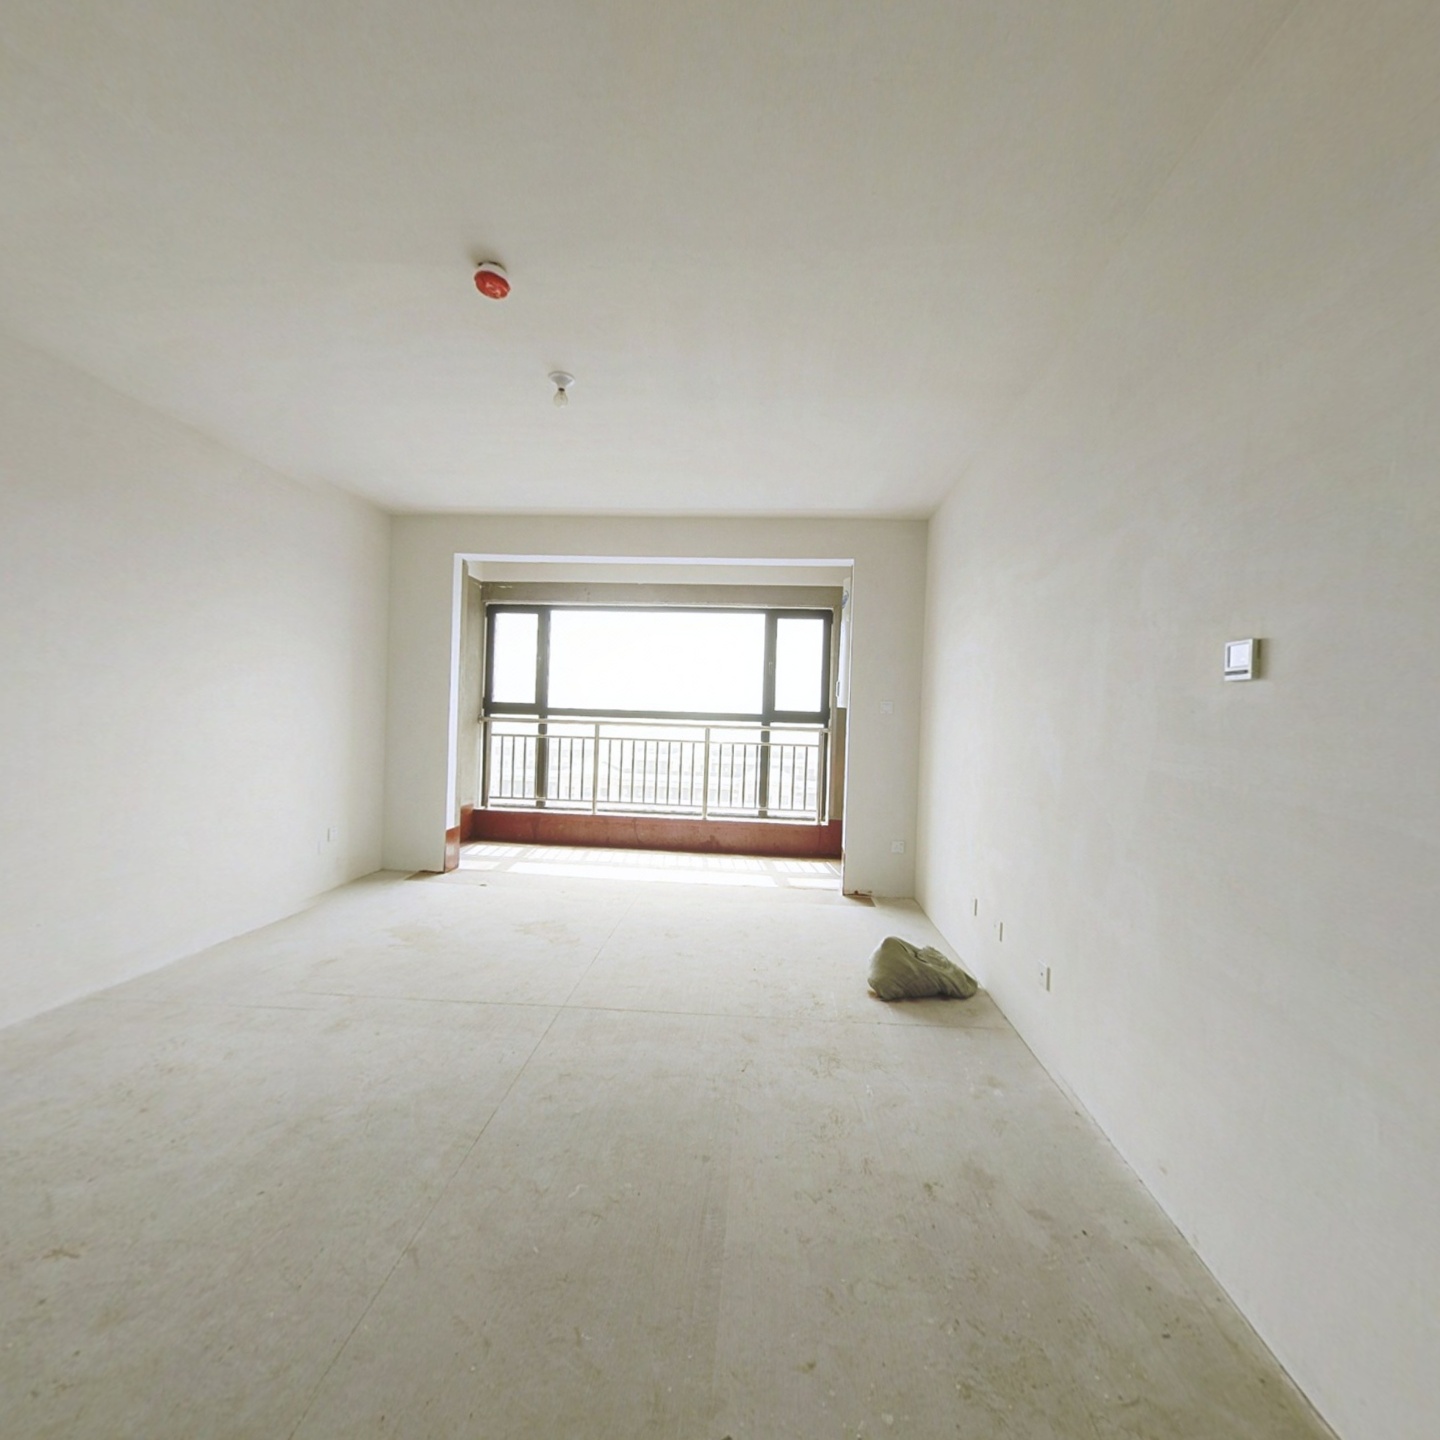 北京路 毛坯大三室 方正户型   储藏室 小区品质高